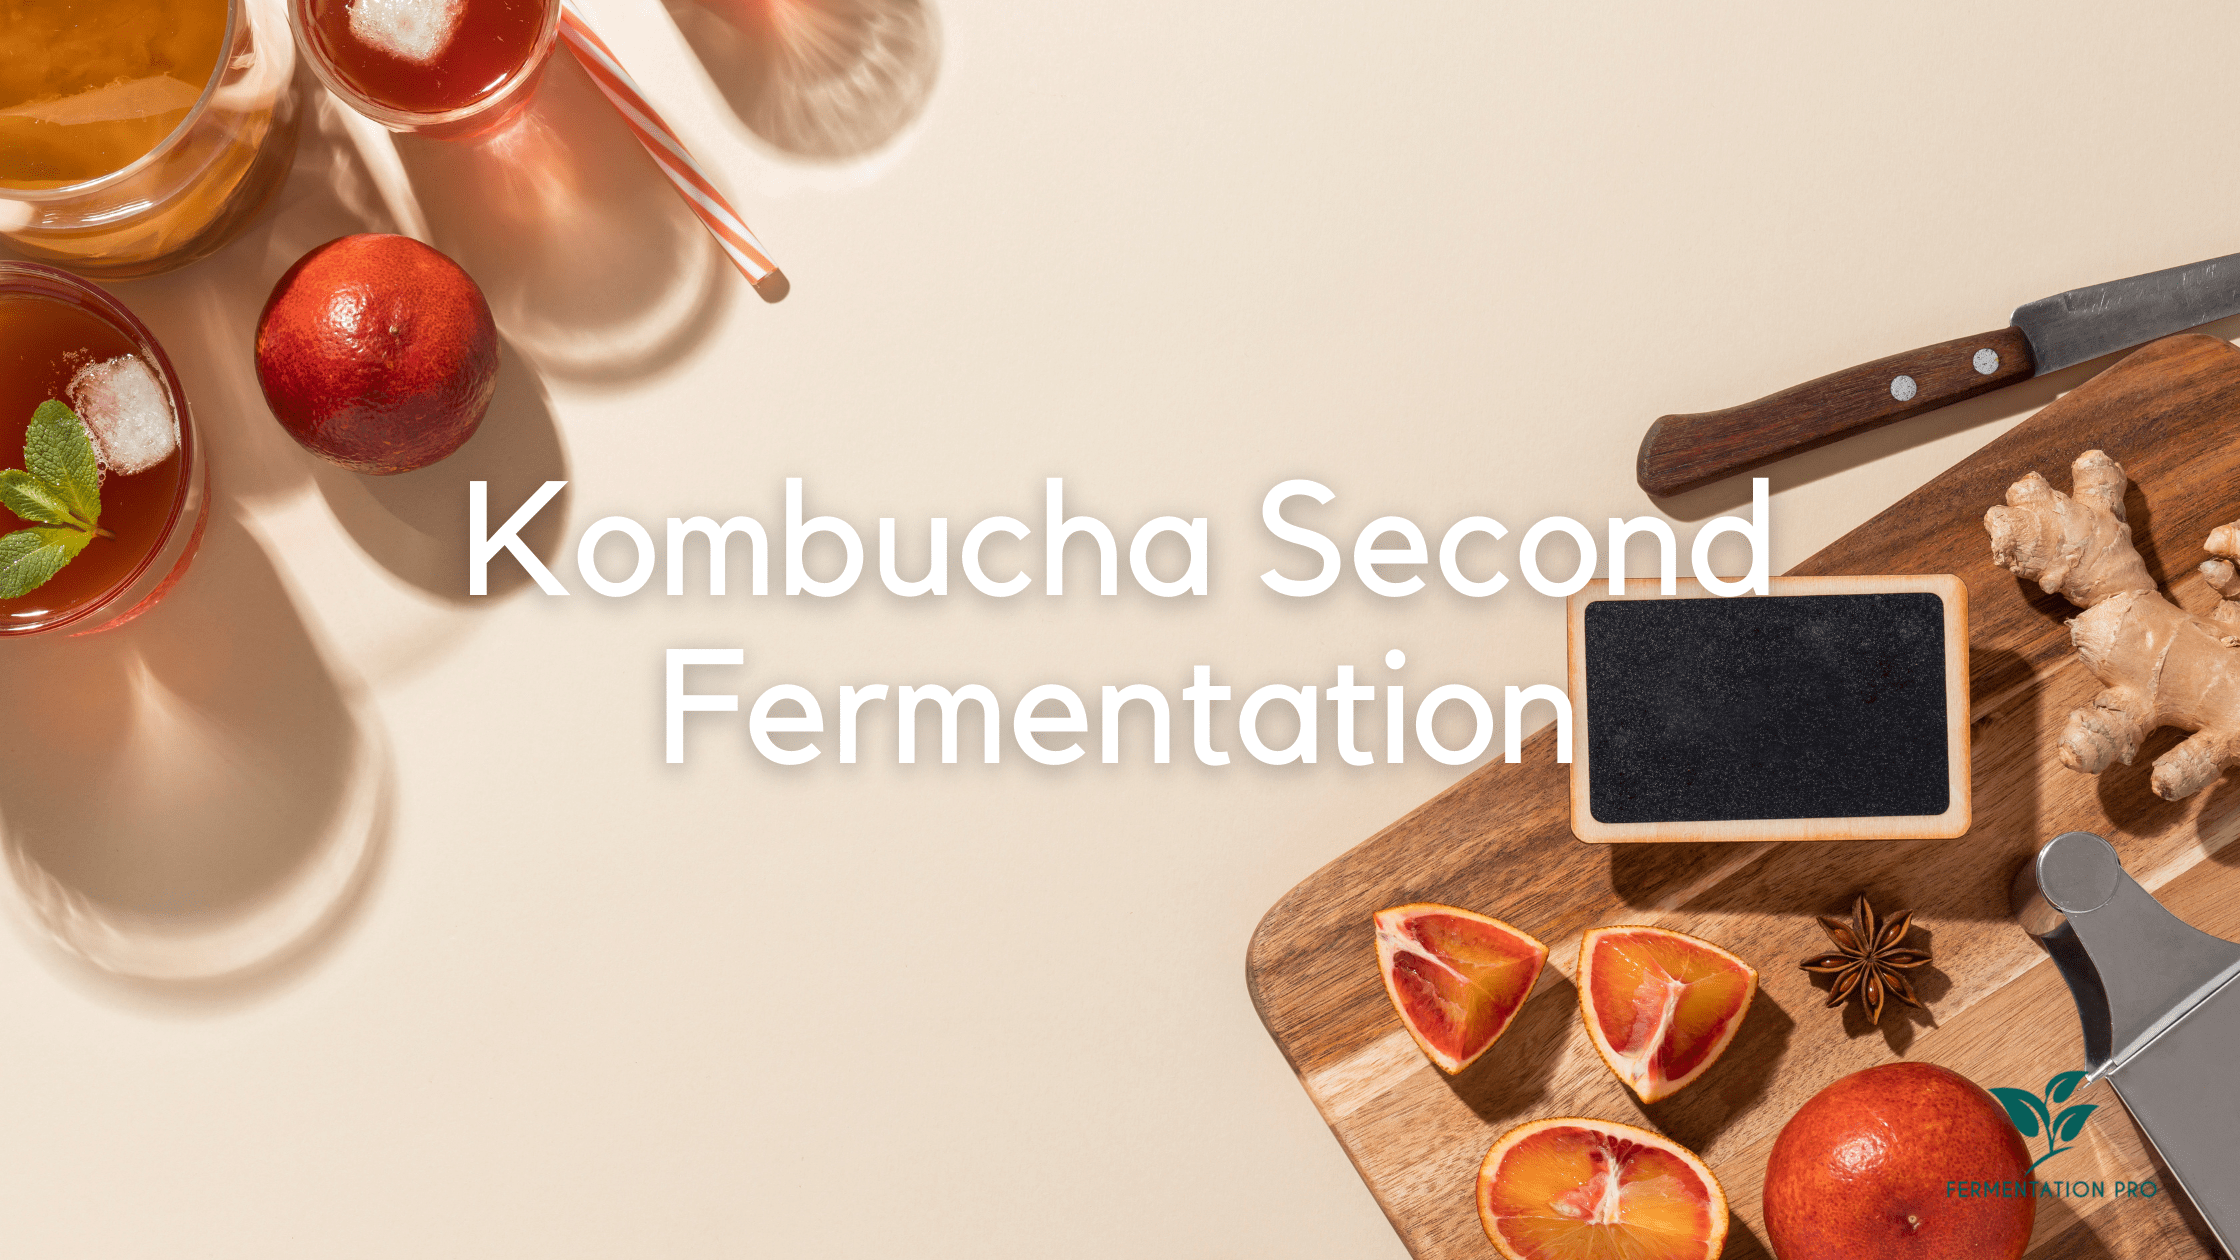 Xxx Sd Baf Lokal - Kombucha Second Fermentation - Fermentation Pro